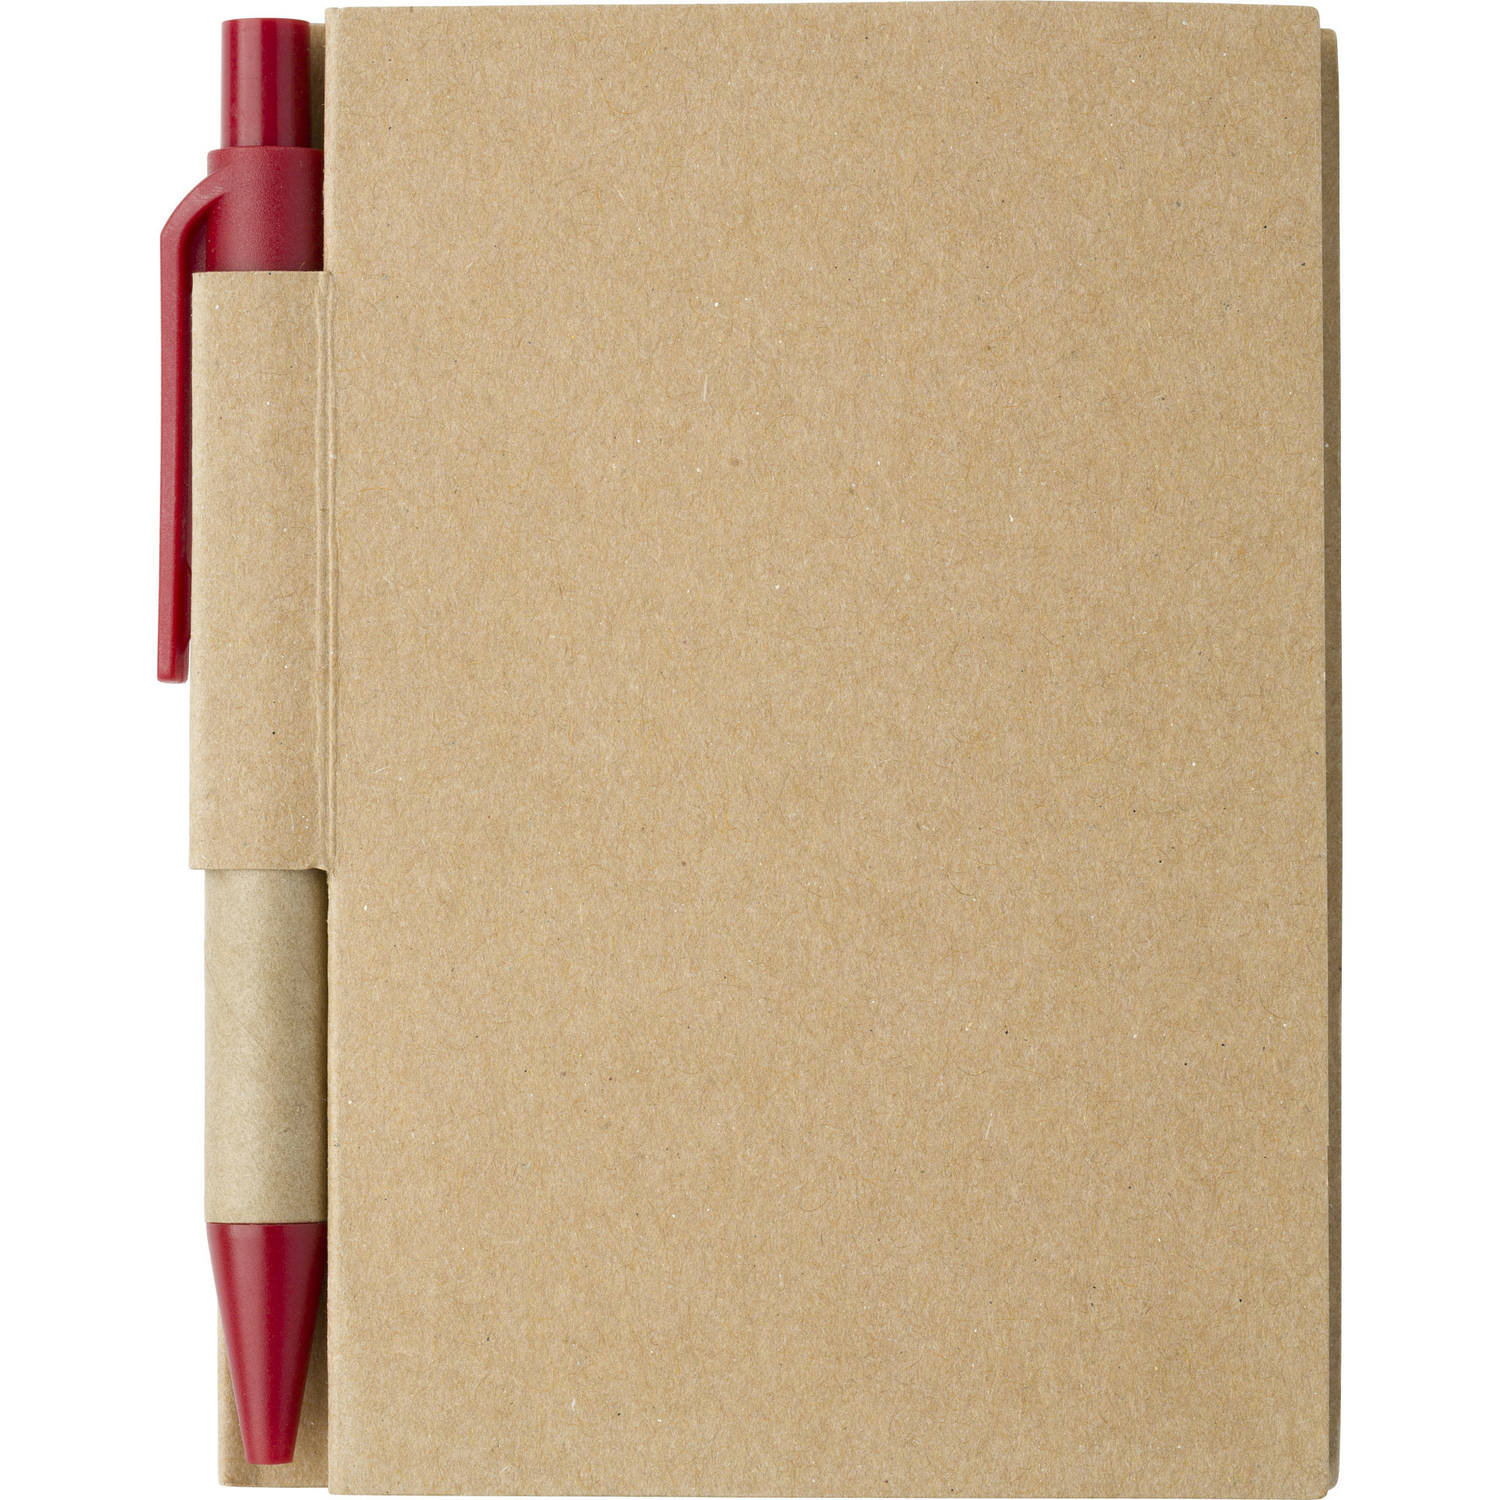 Notitie-opschrijf boekje met balpen harde kaft beige-rood 11x8cm 80blz gelinieerd Notitieboek